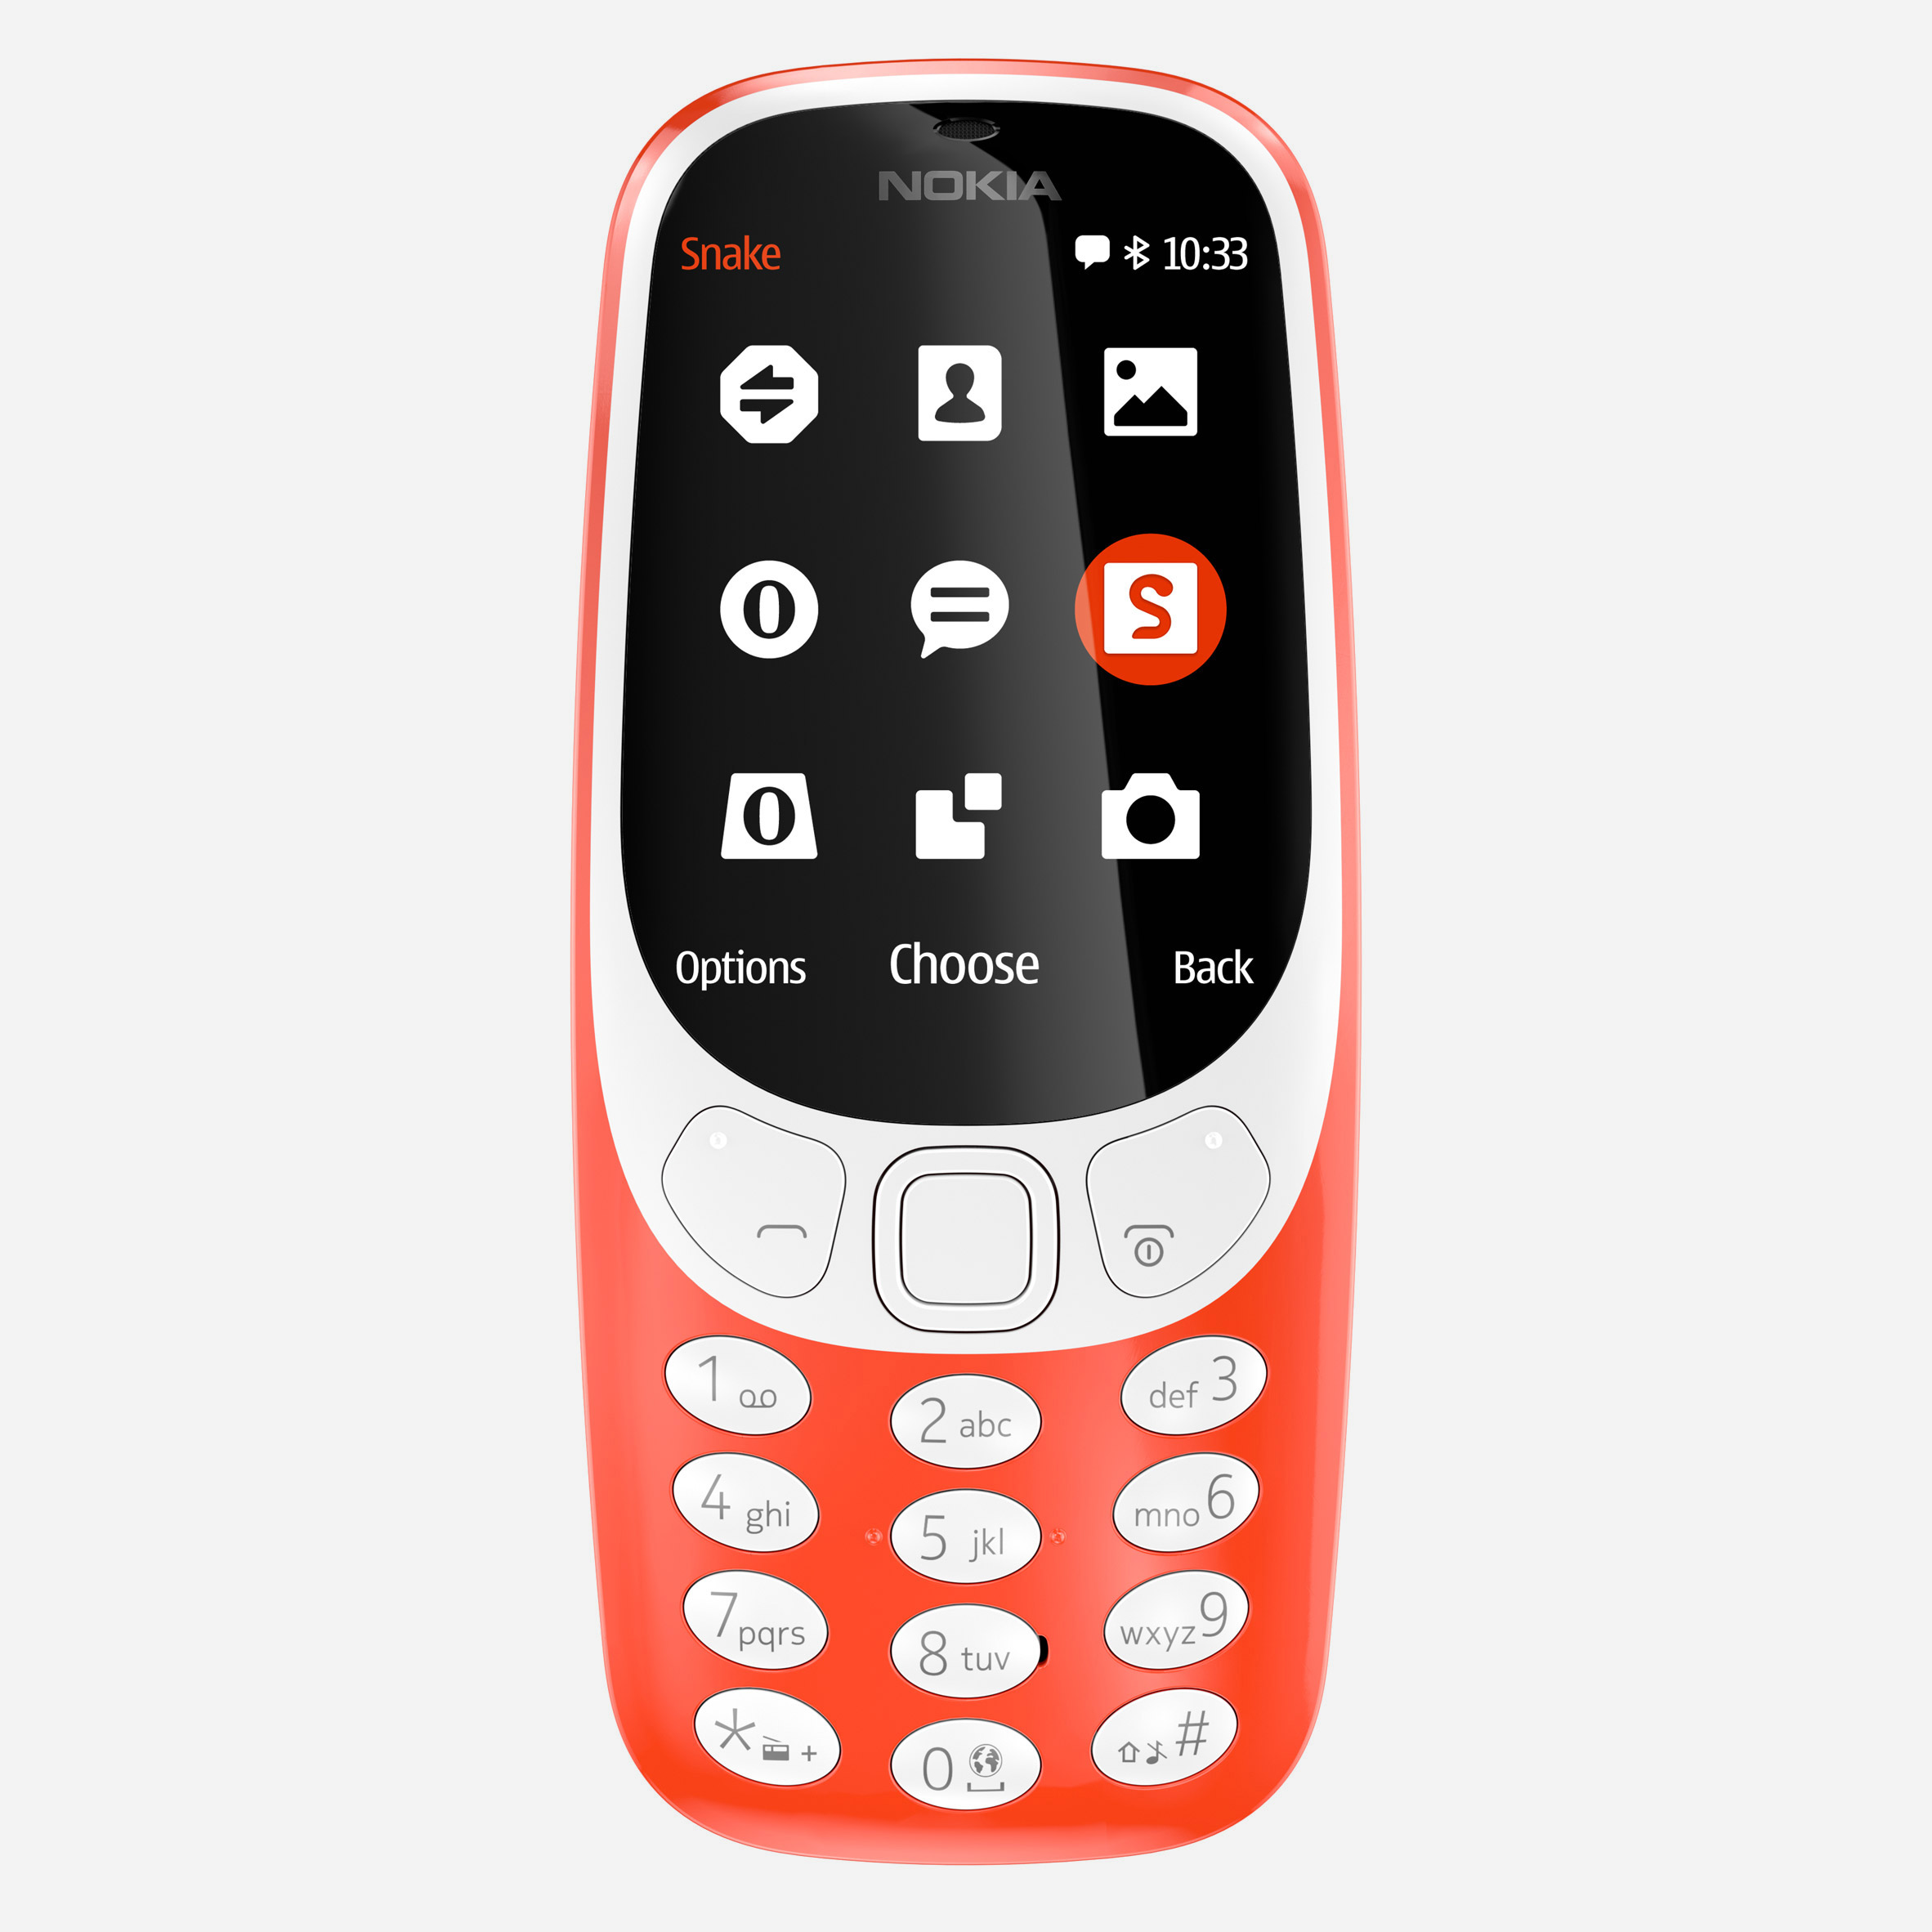 Design classic: the Nokia 3310 mobile phone